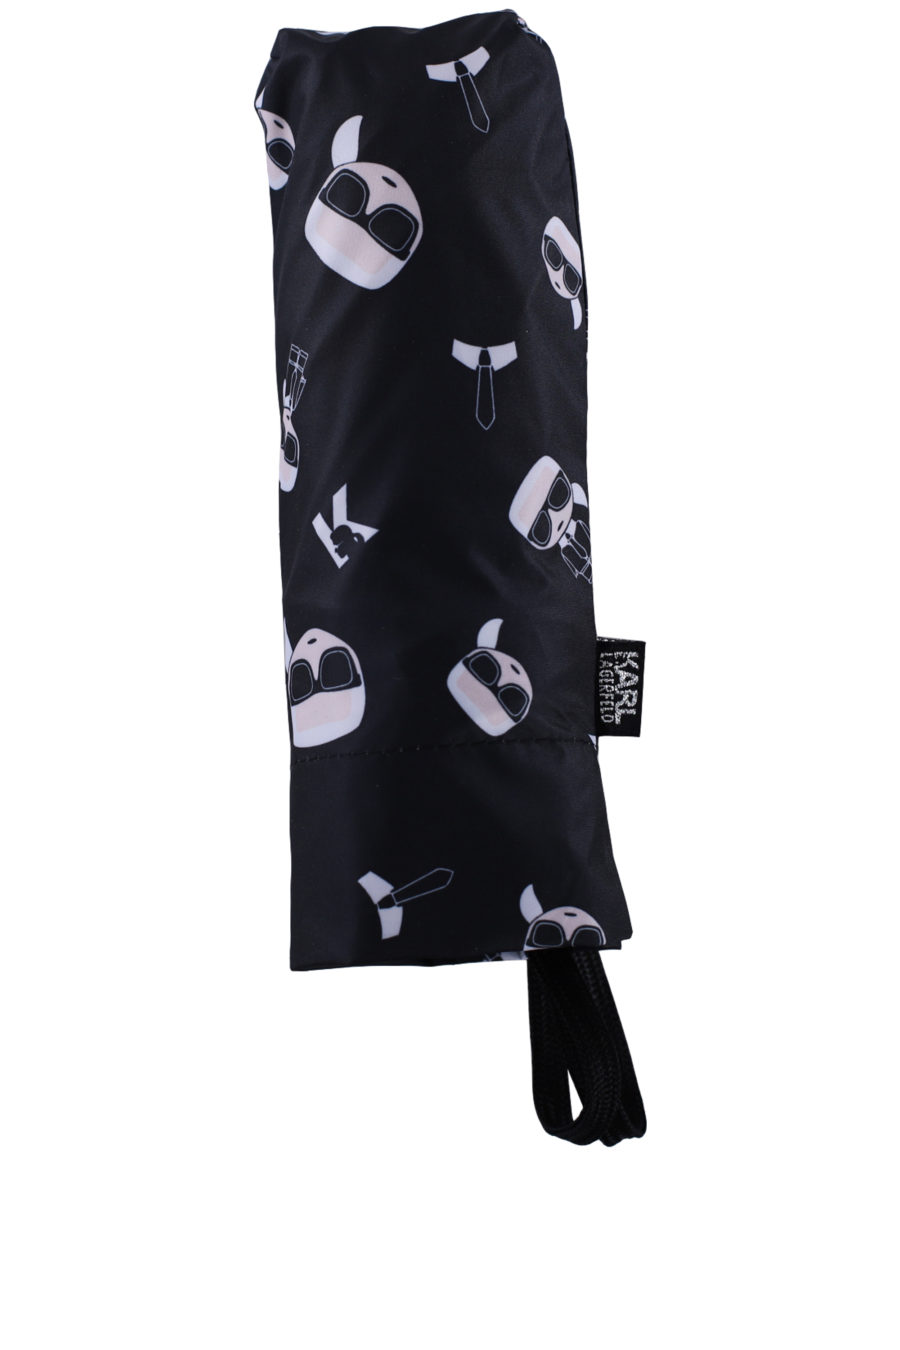 Guarda-chuva preto com padrão de marca - IMG 0135